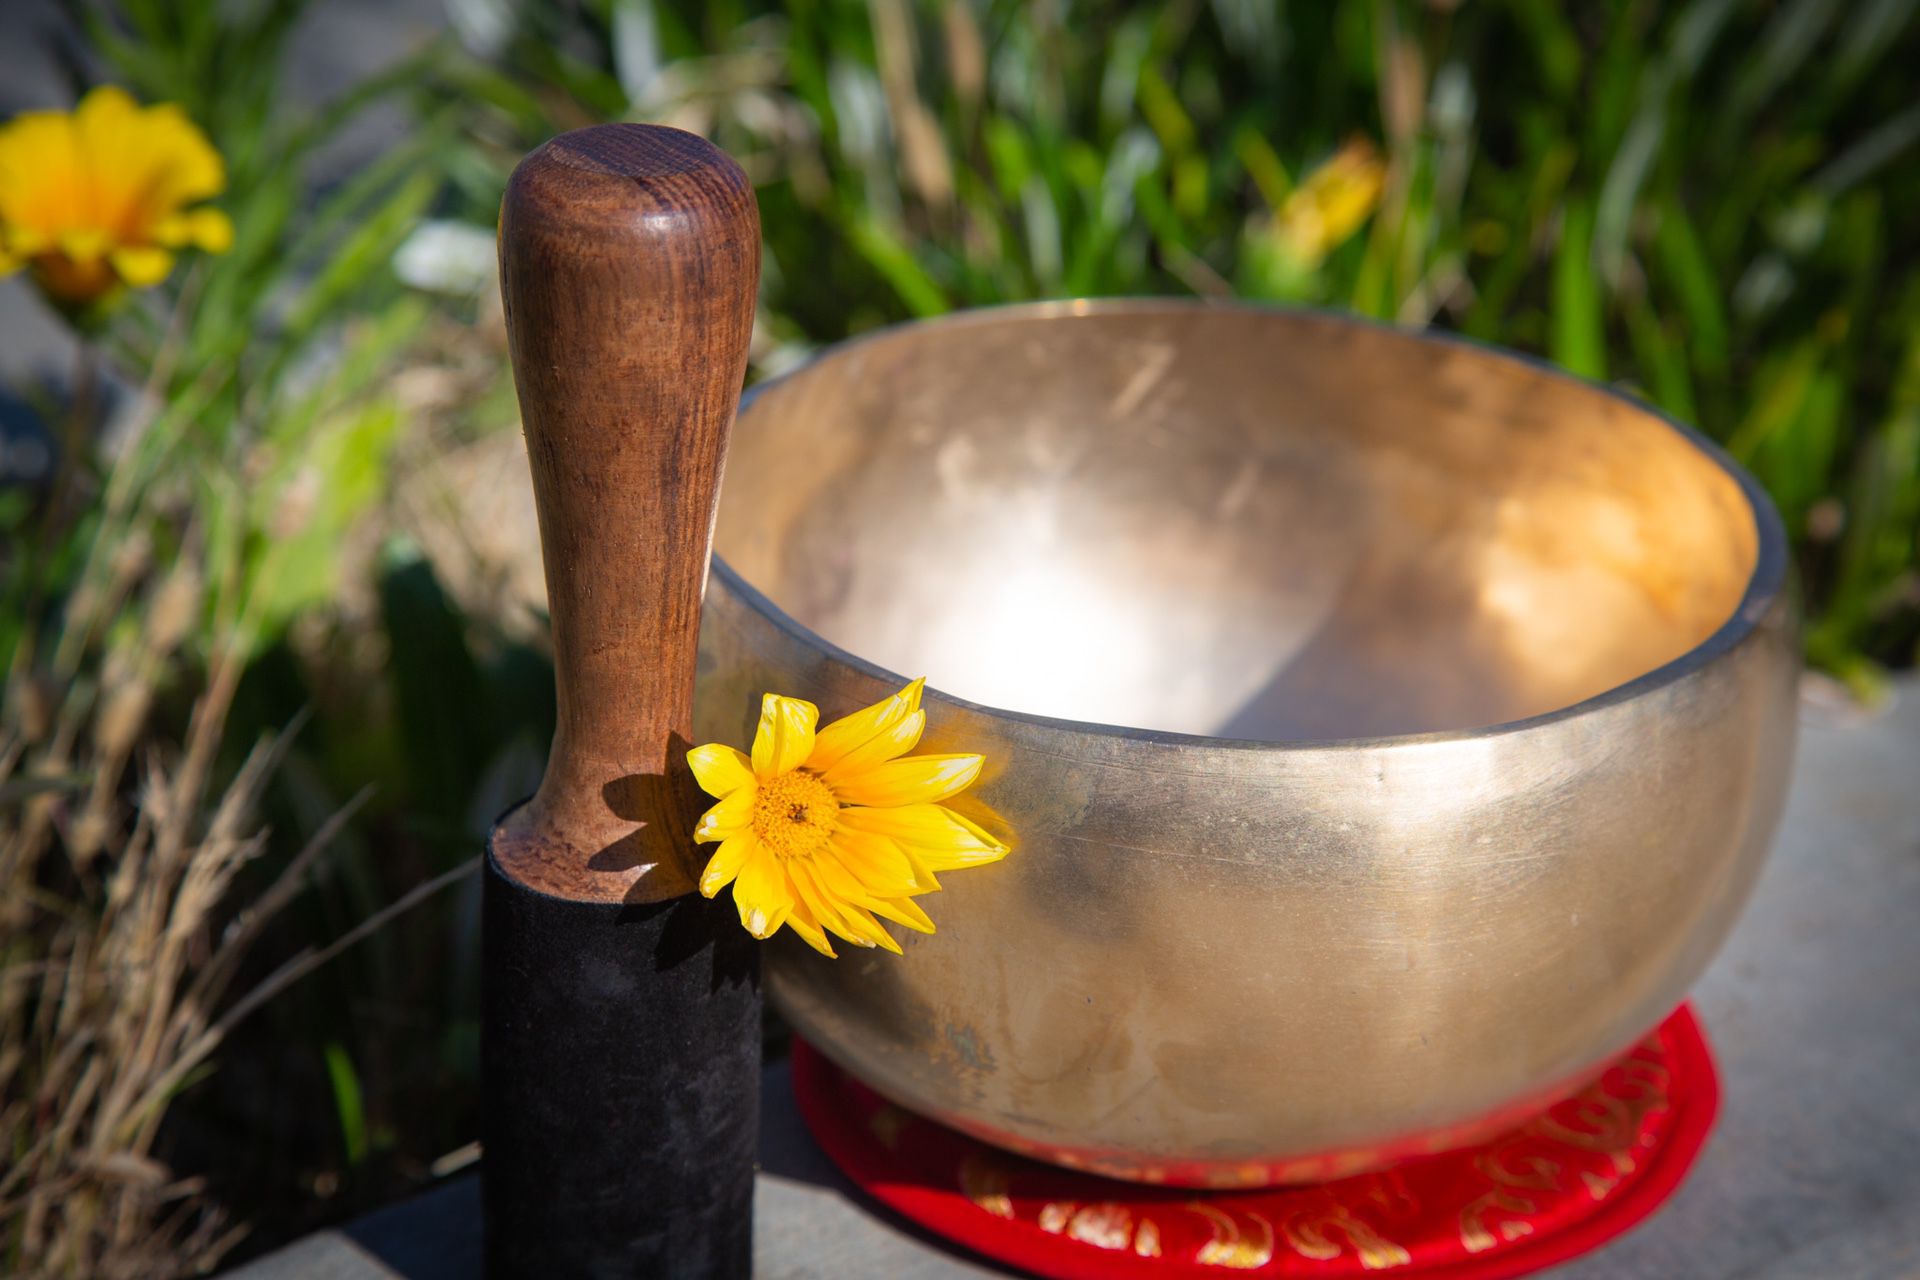 6.7” Antique Handmade Bowl